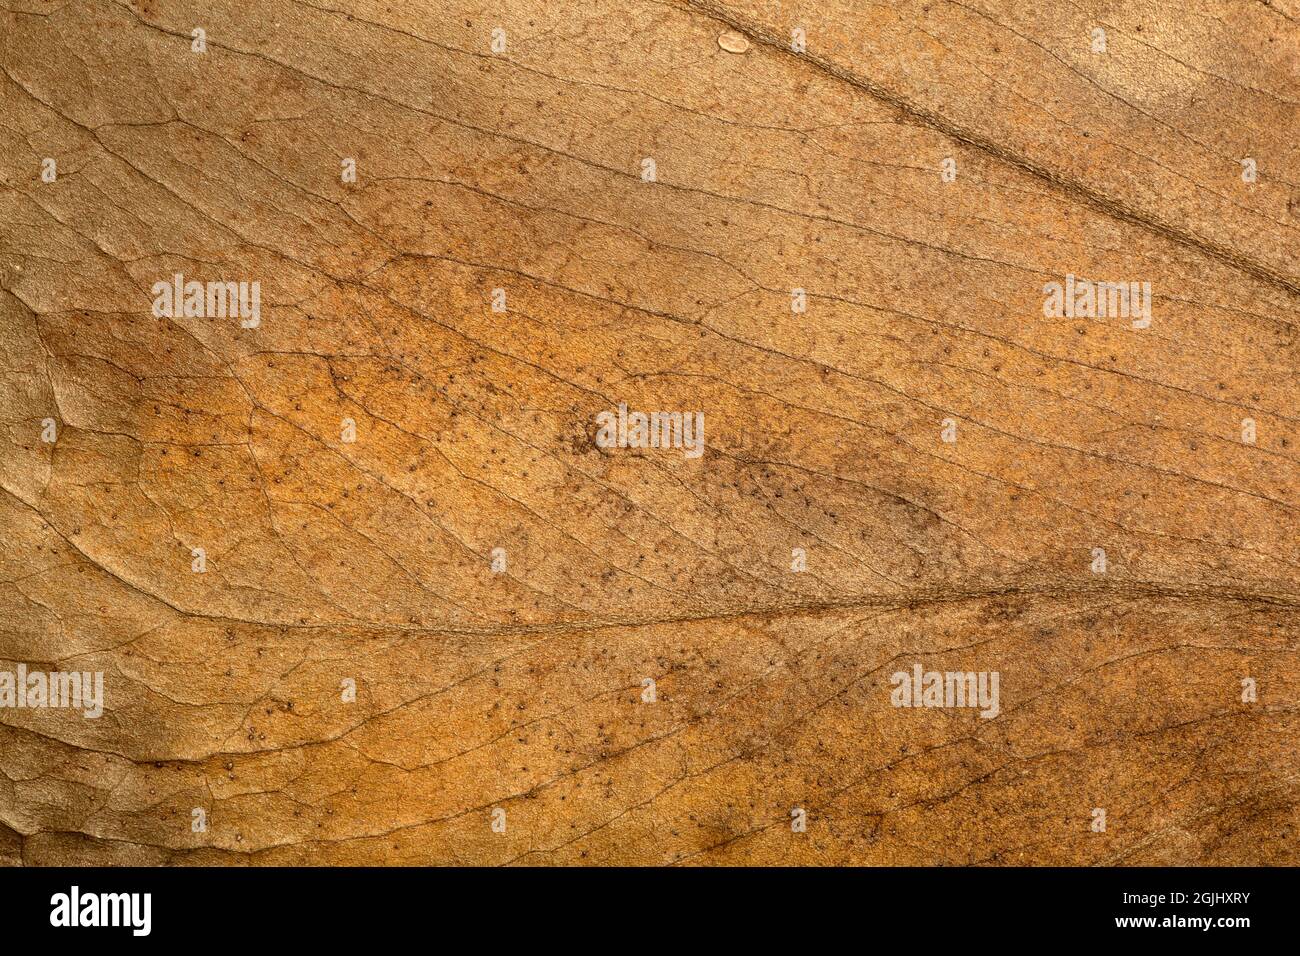 Trockener Blatthintergrund. Textur, Muster und Oberfläche von trockenem braunen Herbstblatt mit Adern. Botanisches Makromuster. Hochwertige Fotos Stockfoto